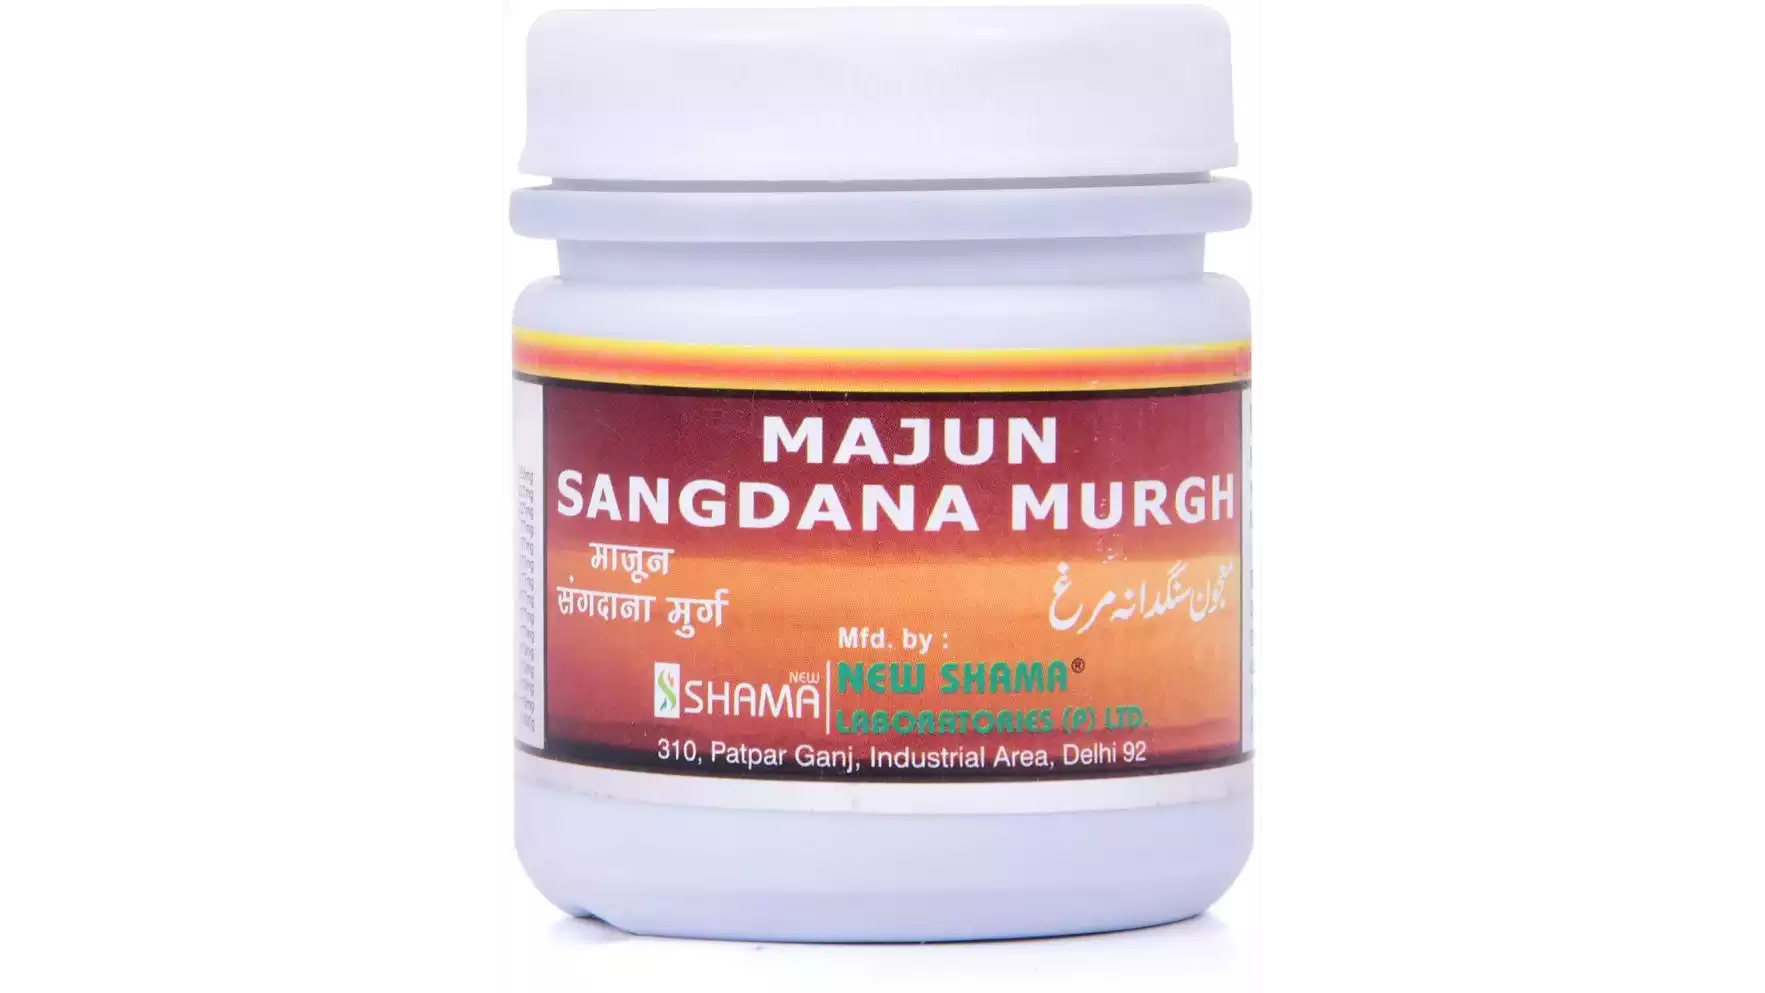 New Shama Majun Sangdana Murgh (125g)